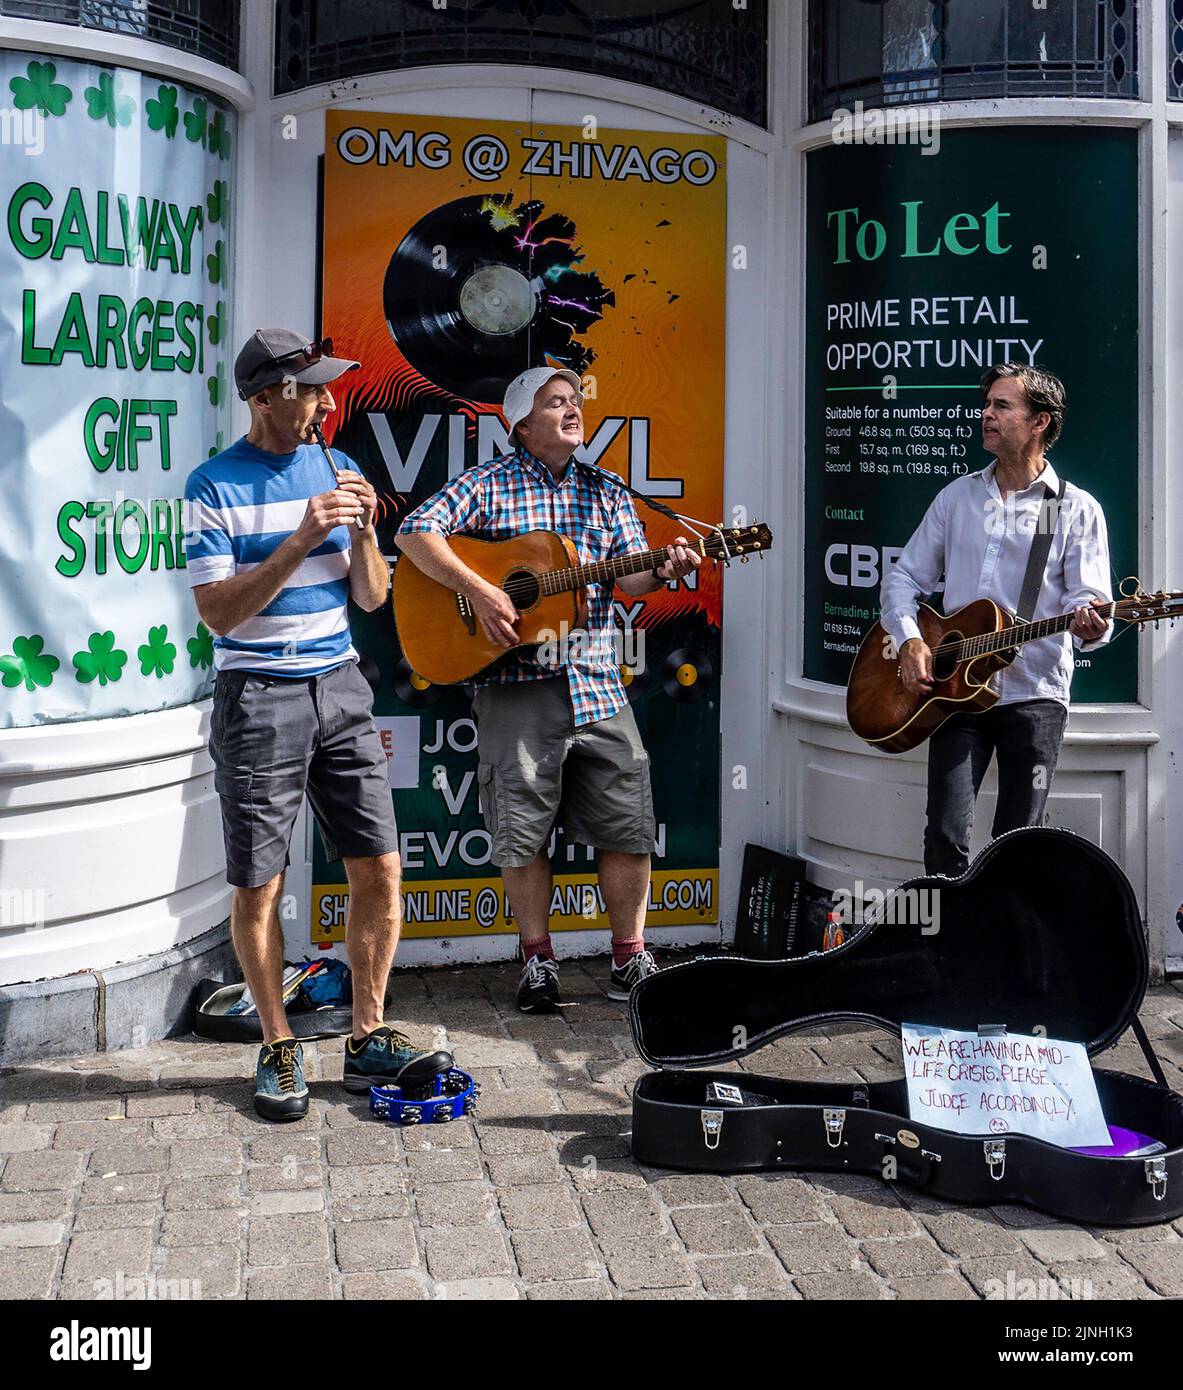 Eine Gruppe von Männern, die auf der Shop Street, Galway, Irland, unterwegs sind und auf ihrem Schild steht, dass sie eine Krise im mittleren Lebensabschnitt haben! Stockfoto